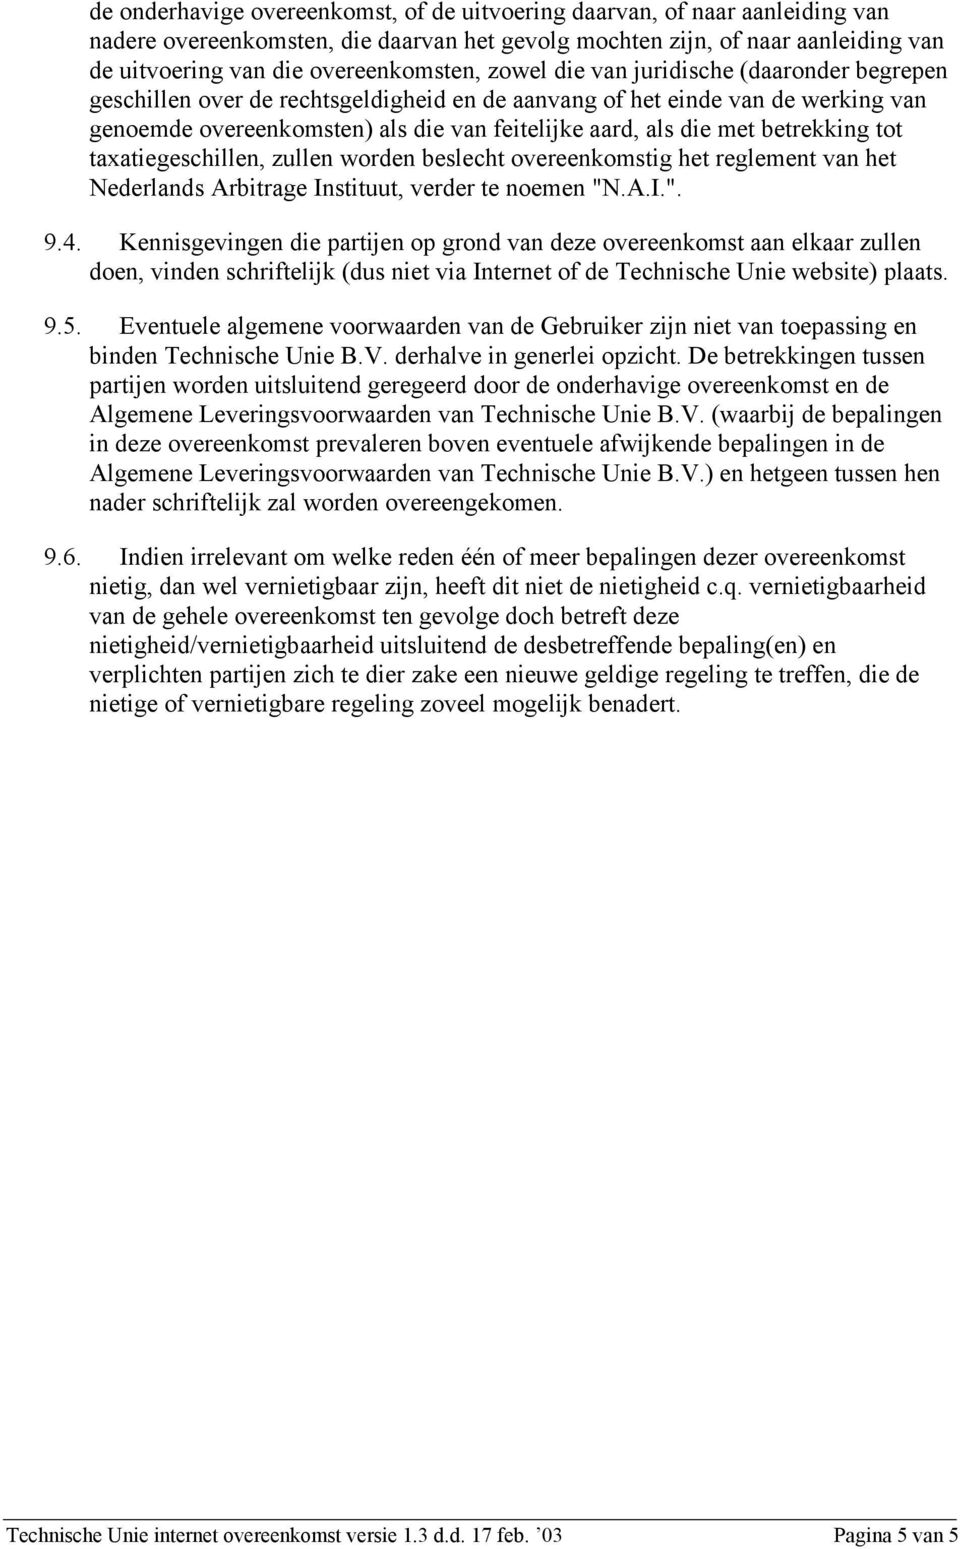 betrekking tot taxatiegeschillen, zullen worden beslecht overeenkomstig het reglement van het Nederlands Arbitrage Instituut, verder te noemen "N.A.I.". 9.4.